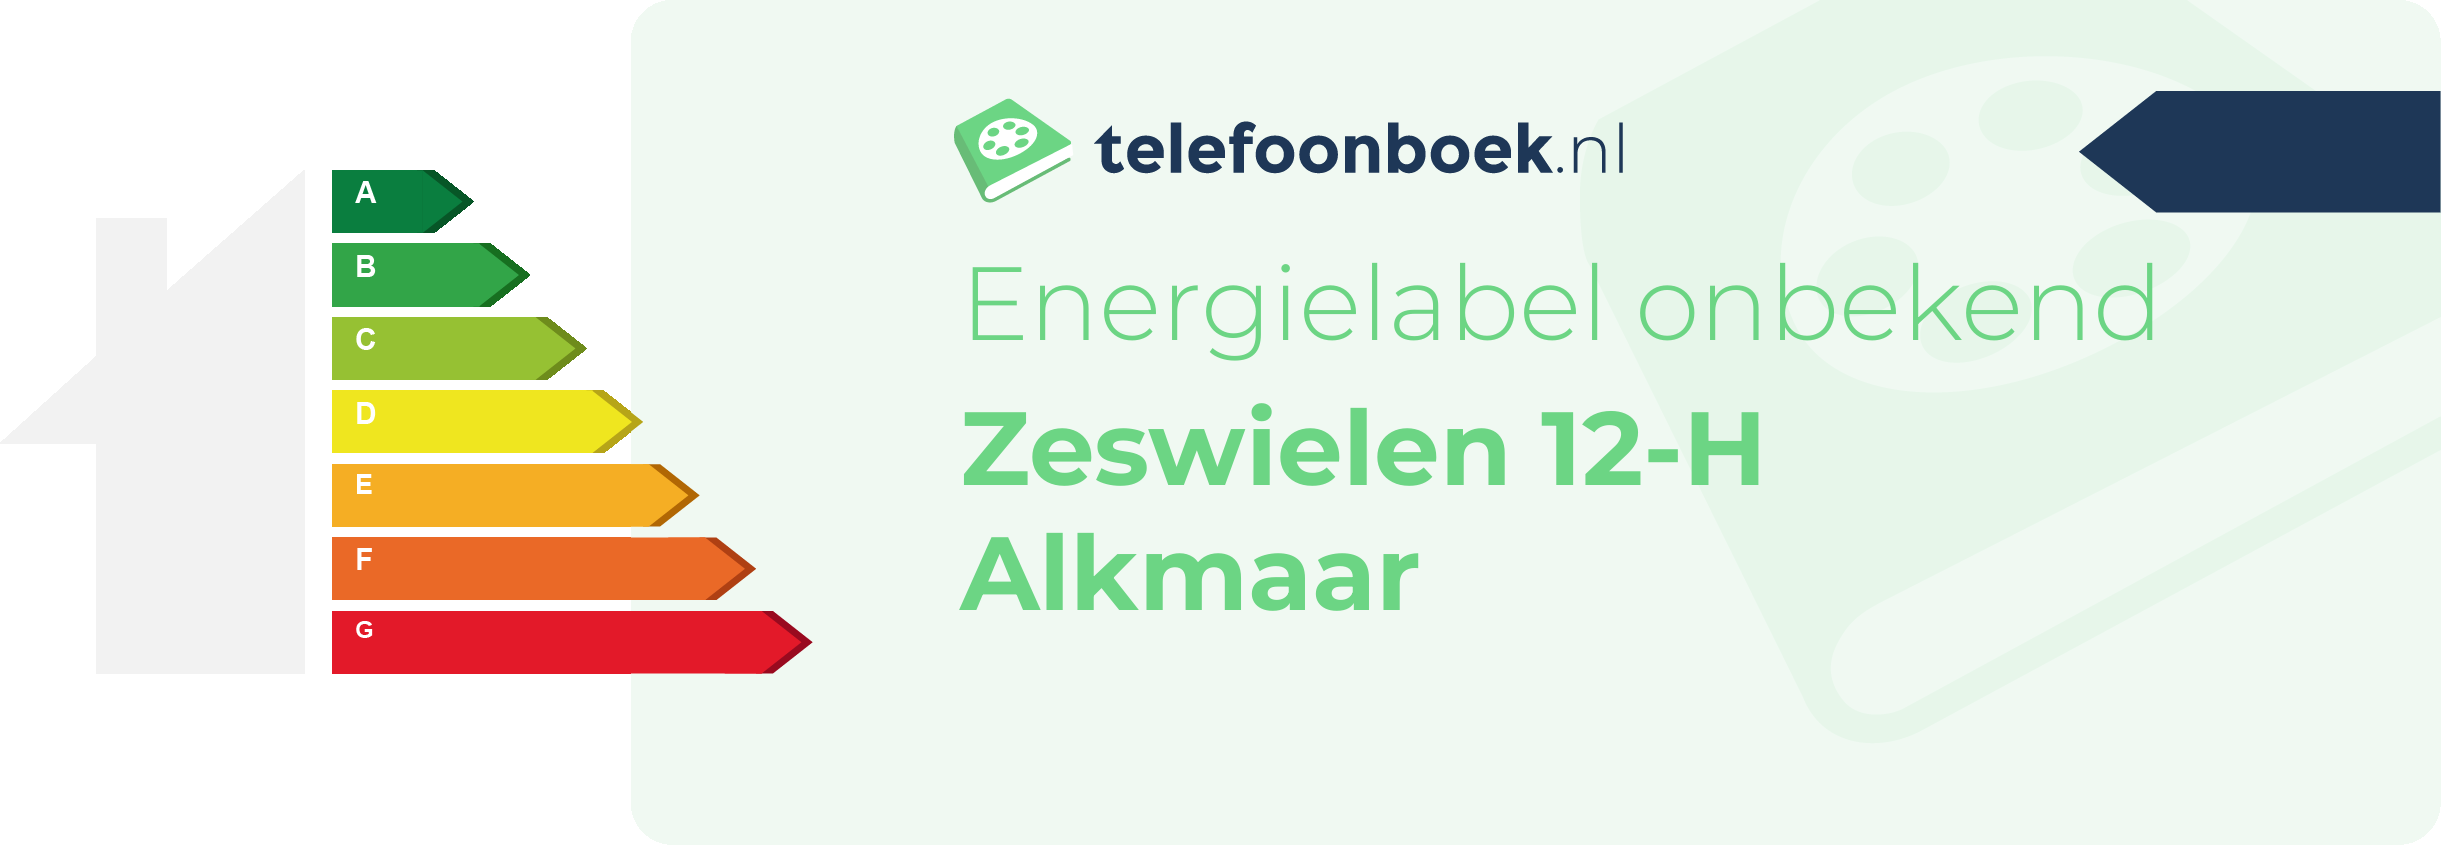 Energielabel Zeswielen 12-H Alkmaar